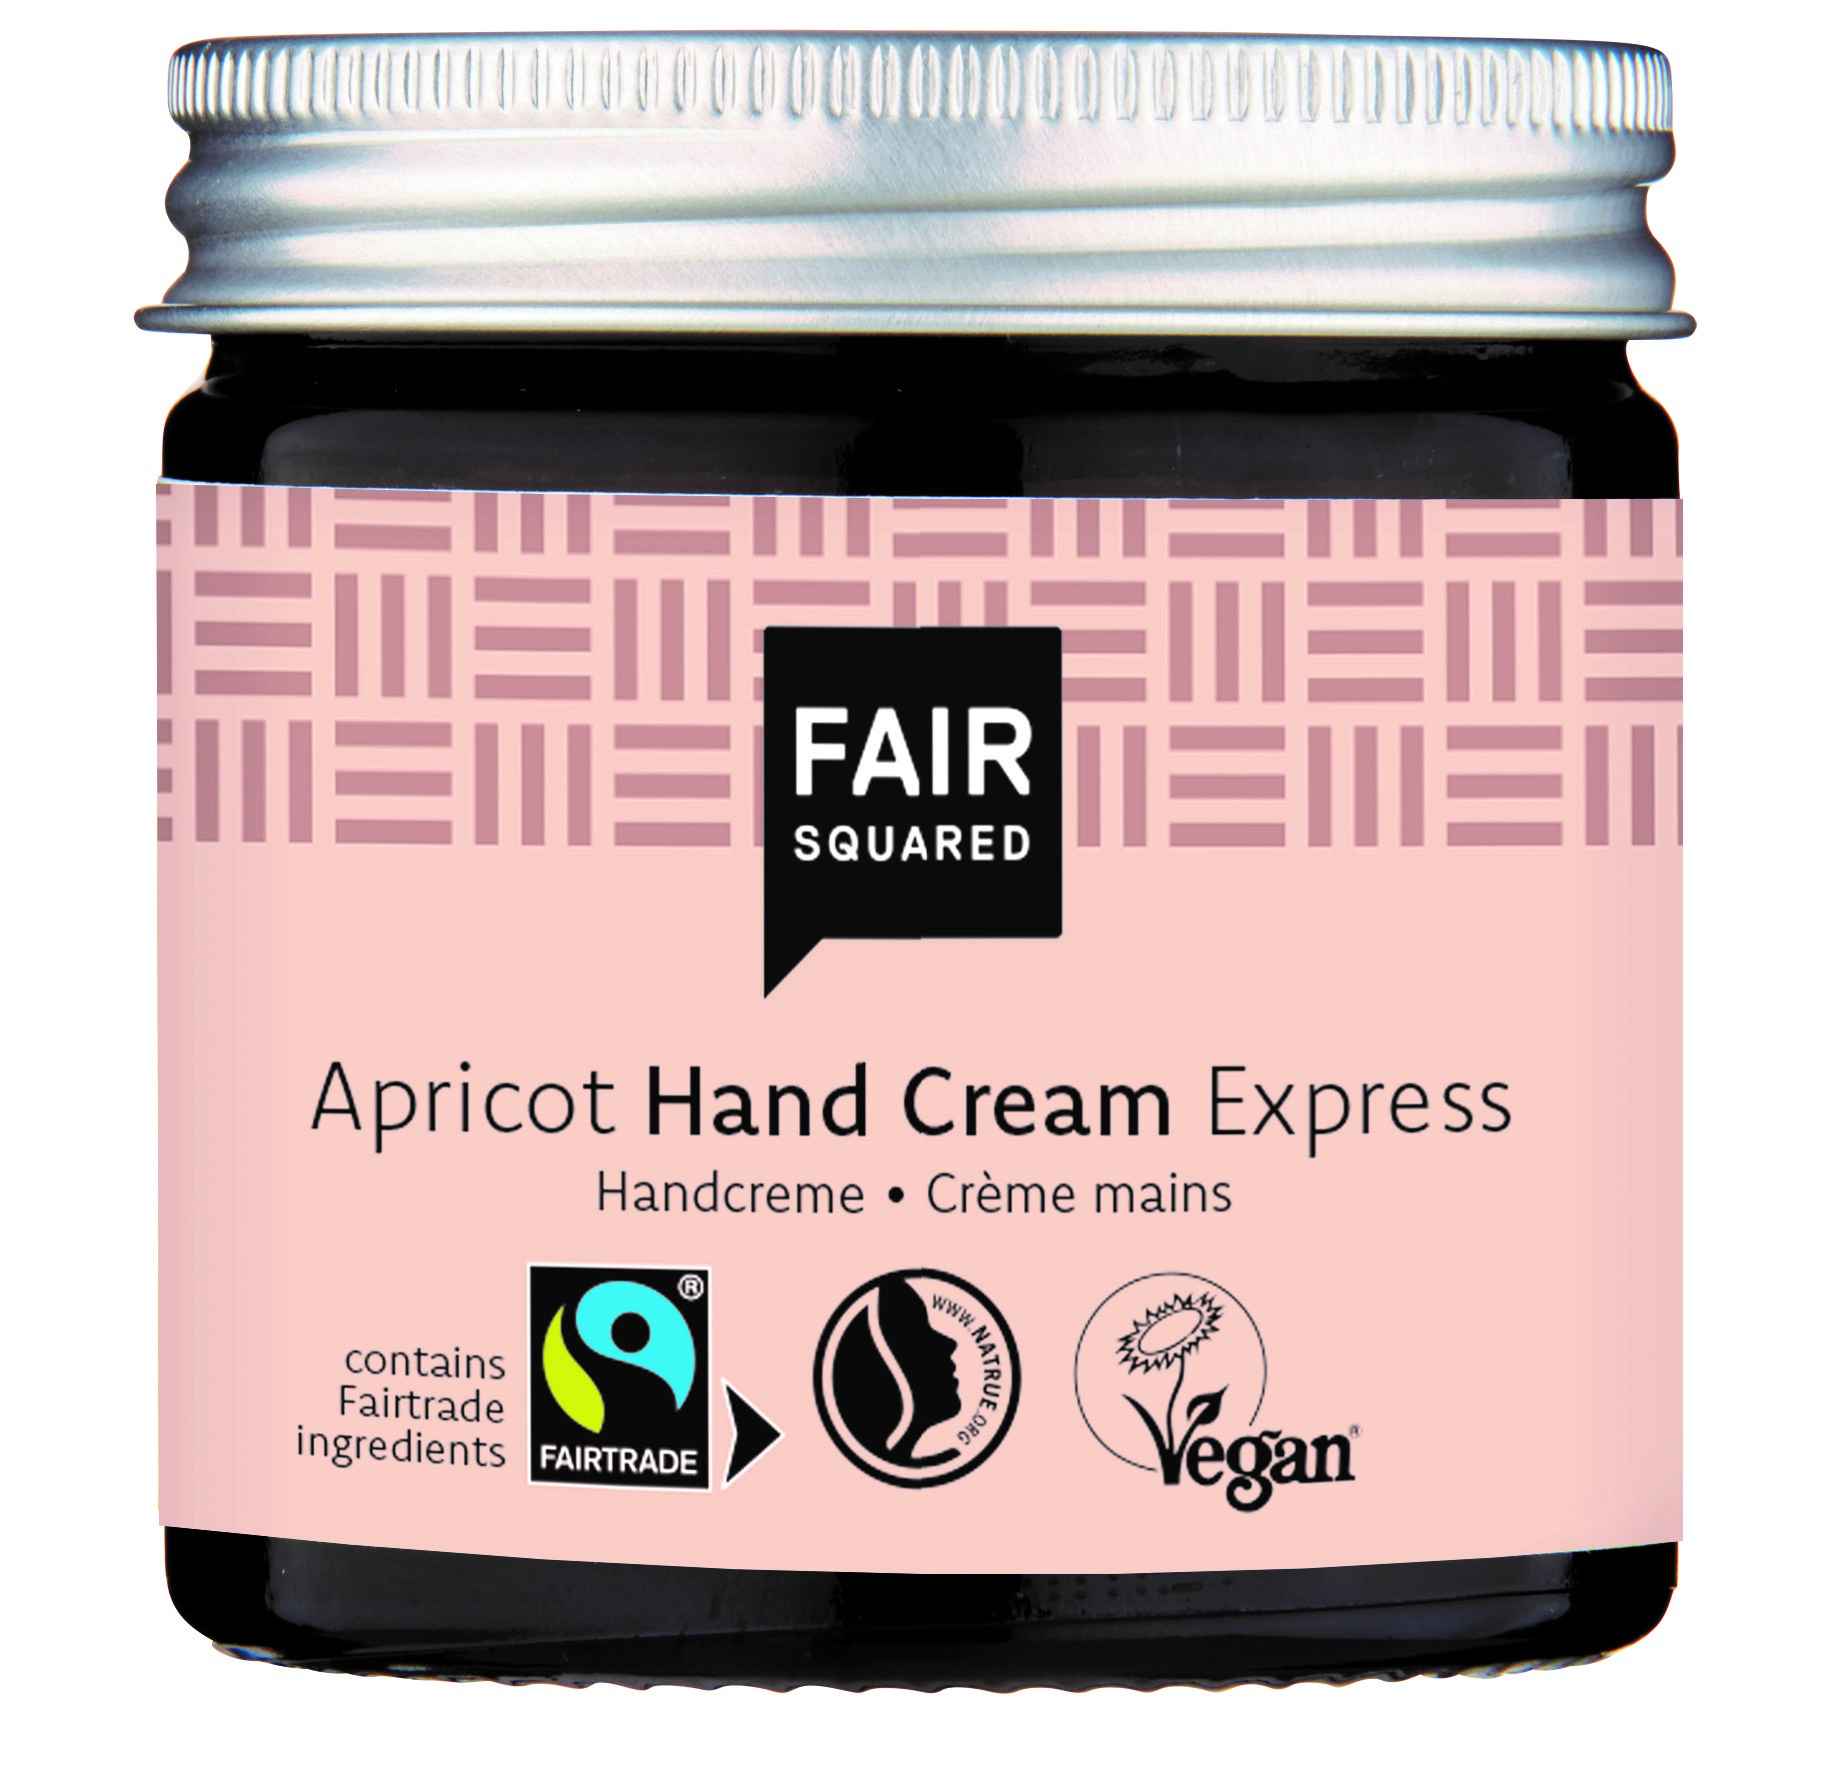 FAIR SQUARED Handcream Apricot 50ml – Express Creme schnell einziehend